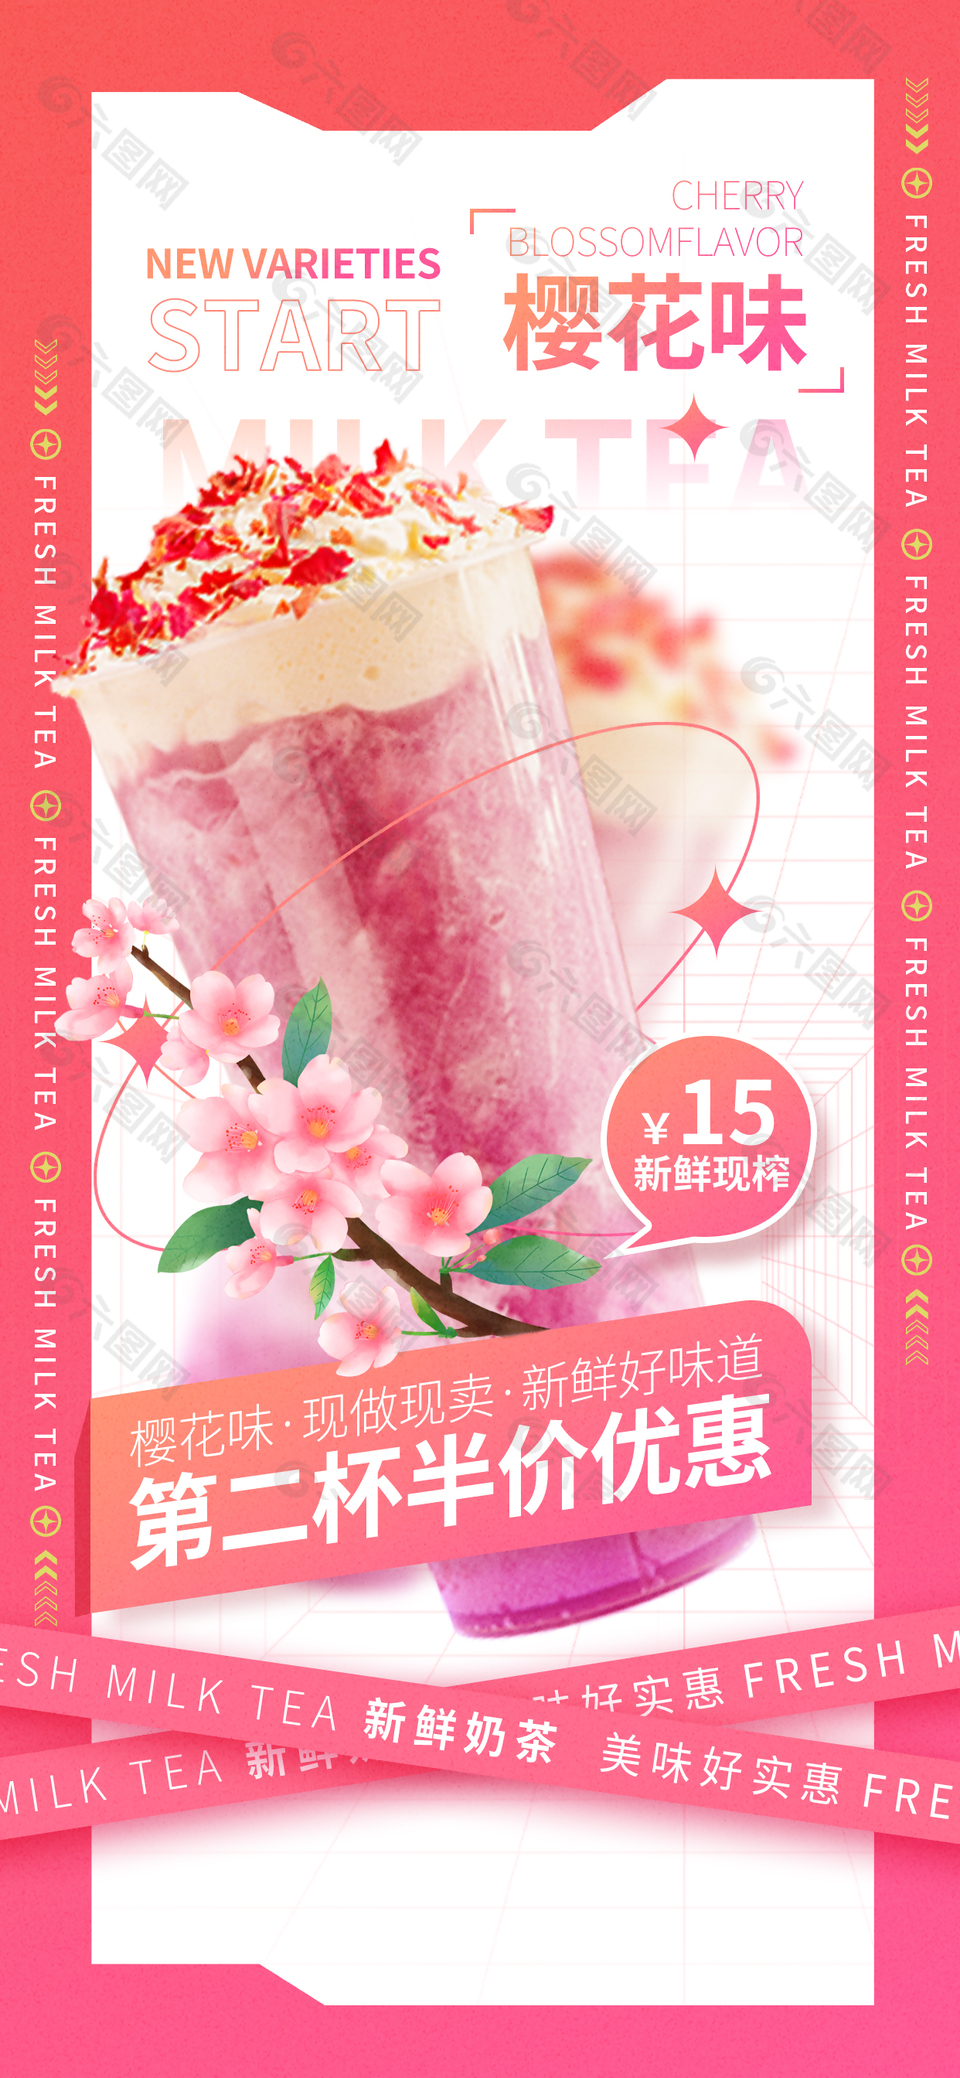 樱花味鲜果奶茶创意宣传海报